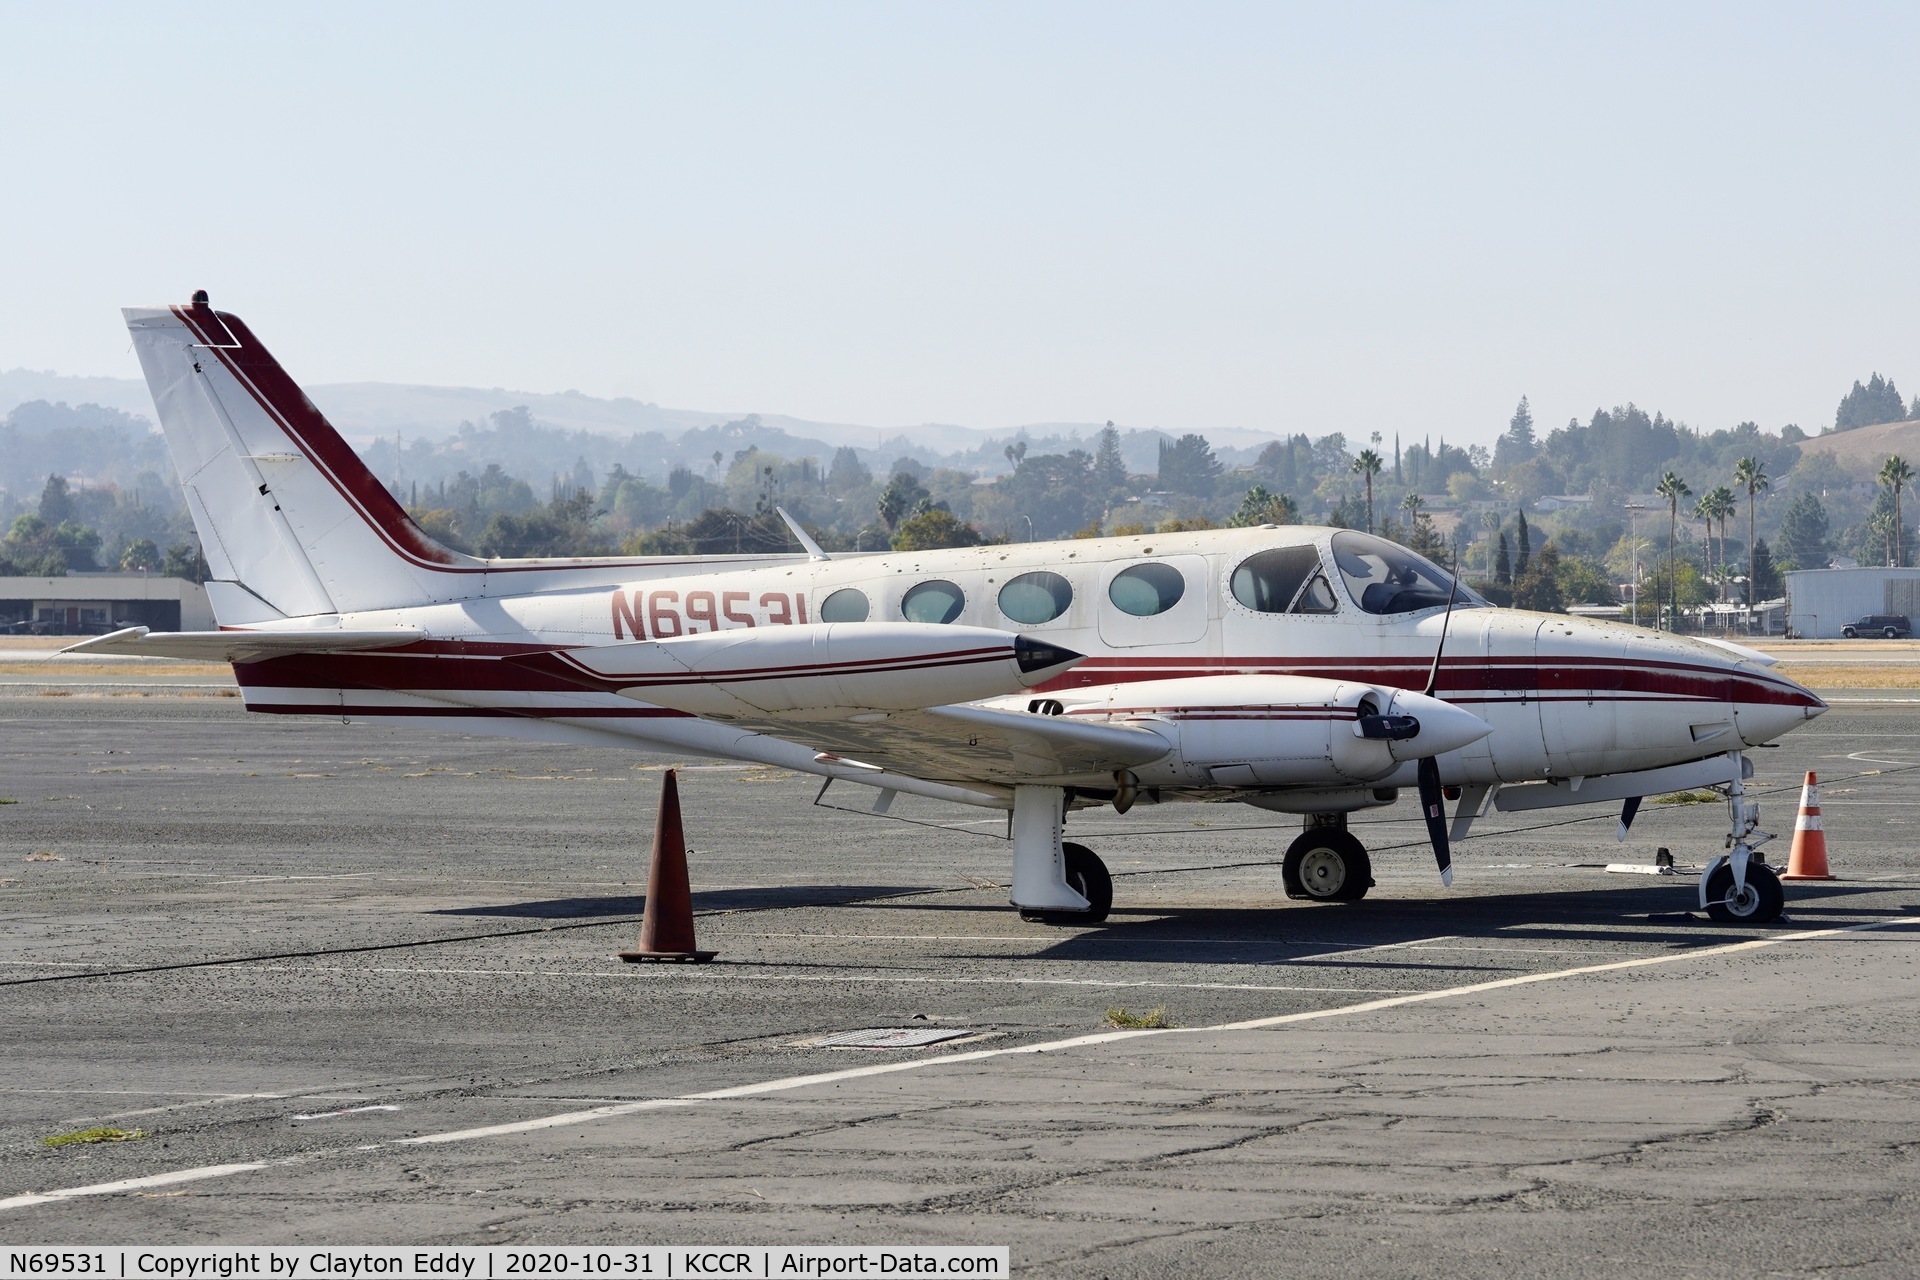 N69531, 1974 Cessna 340 C/N 340-0357, Buchanan Field Concord Airport California 2020.